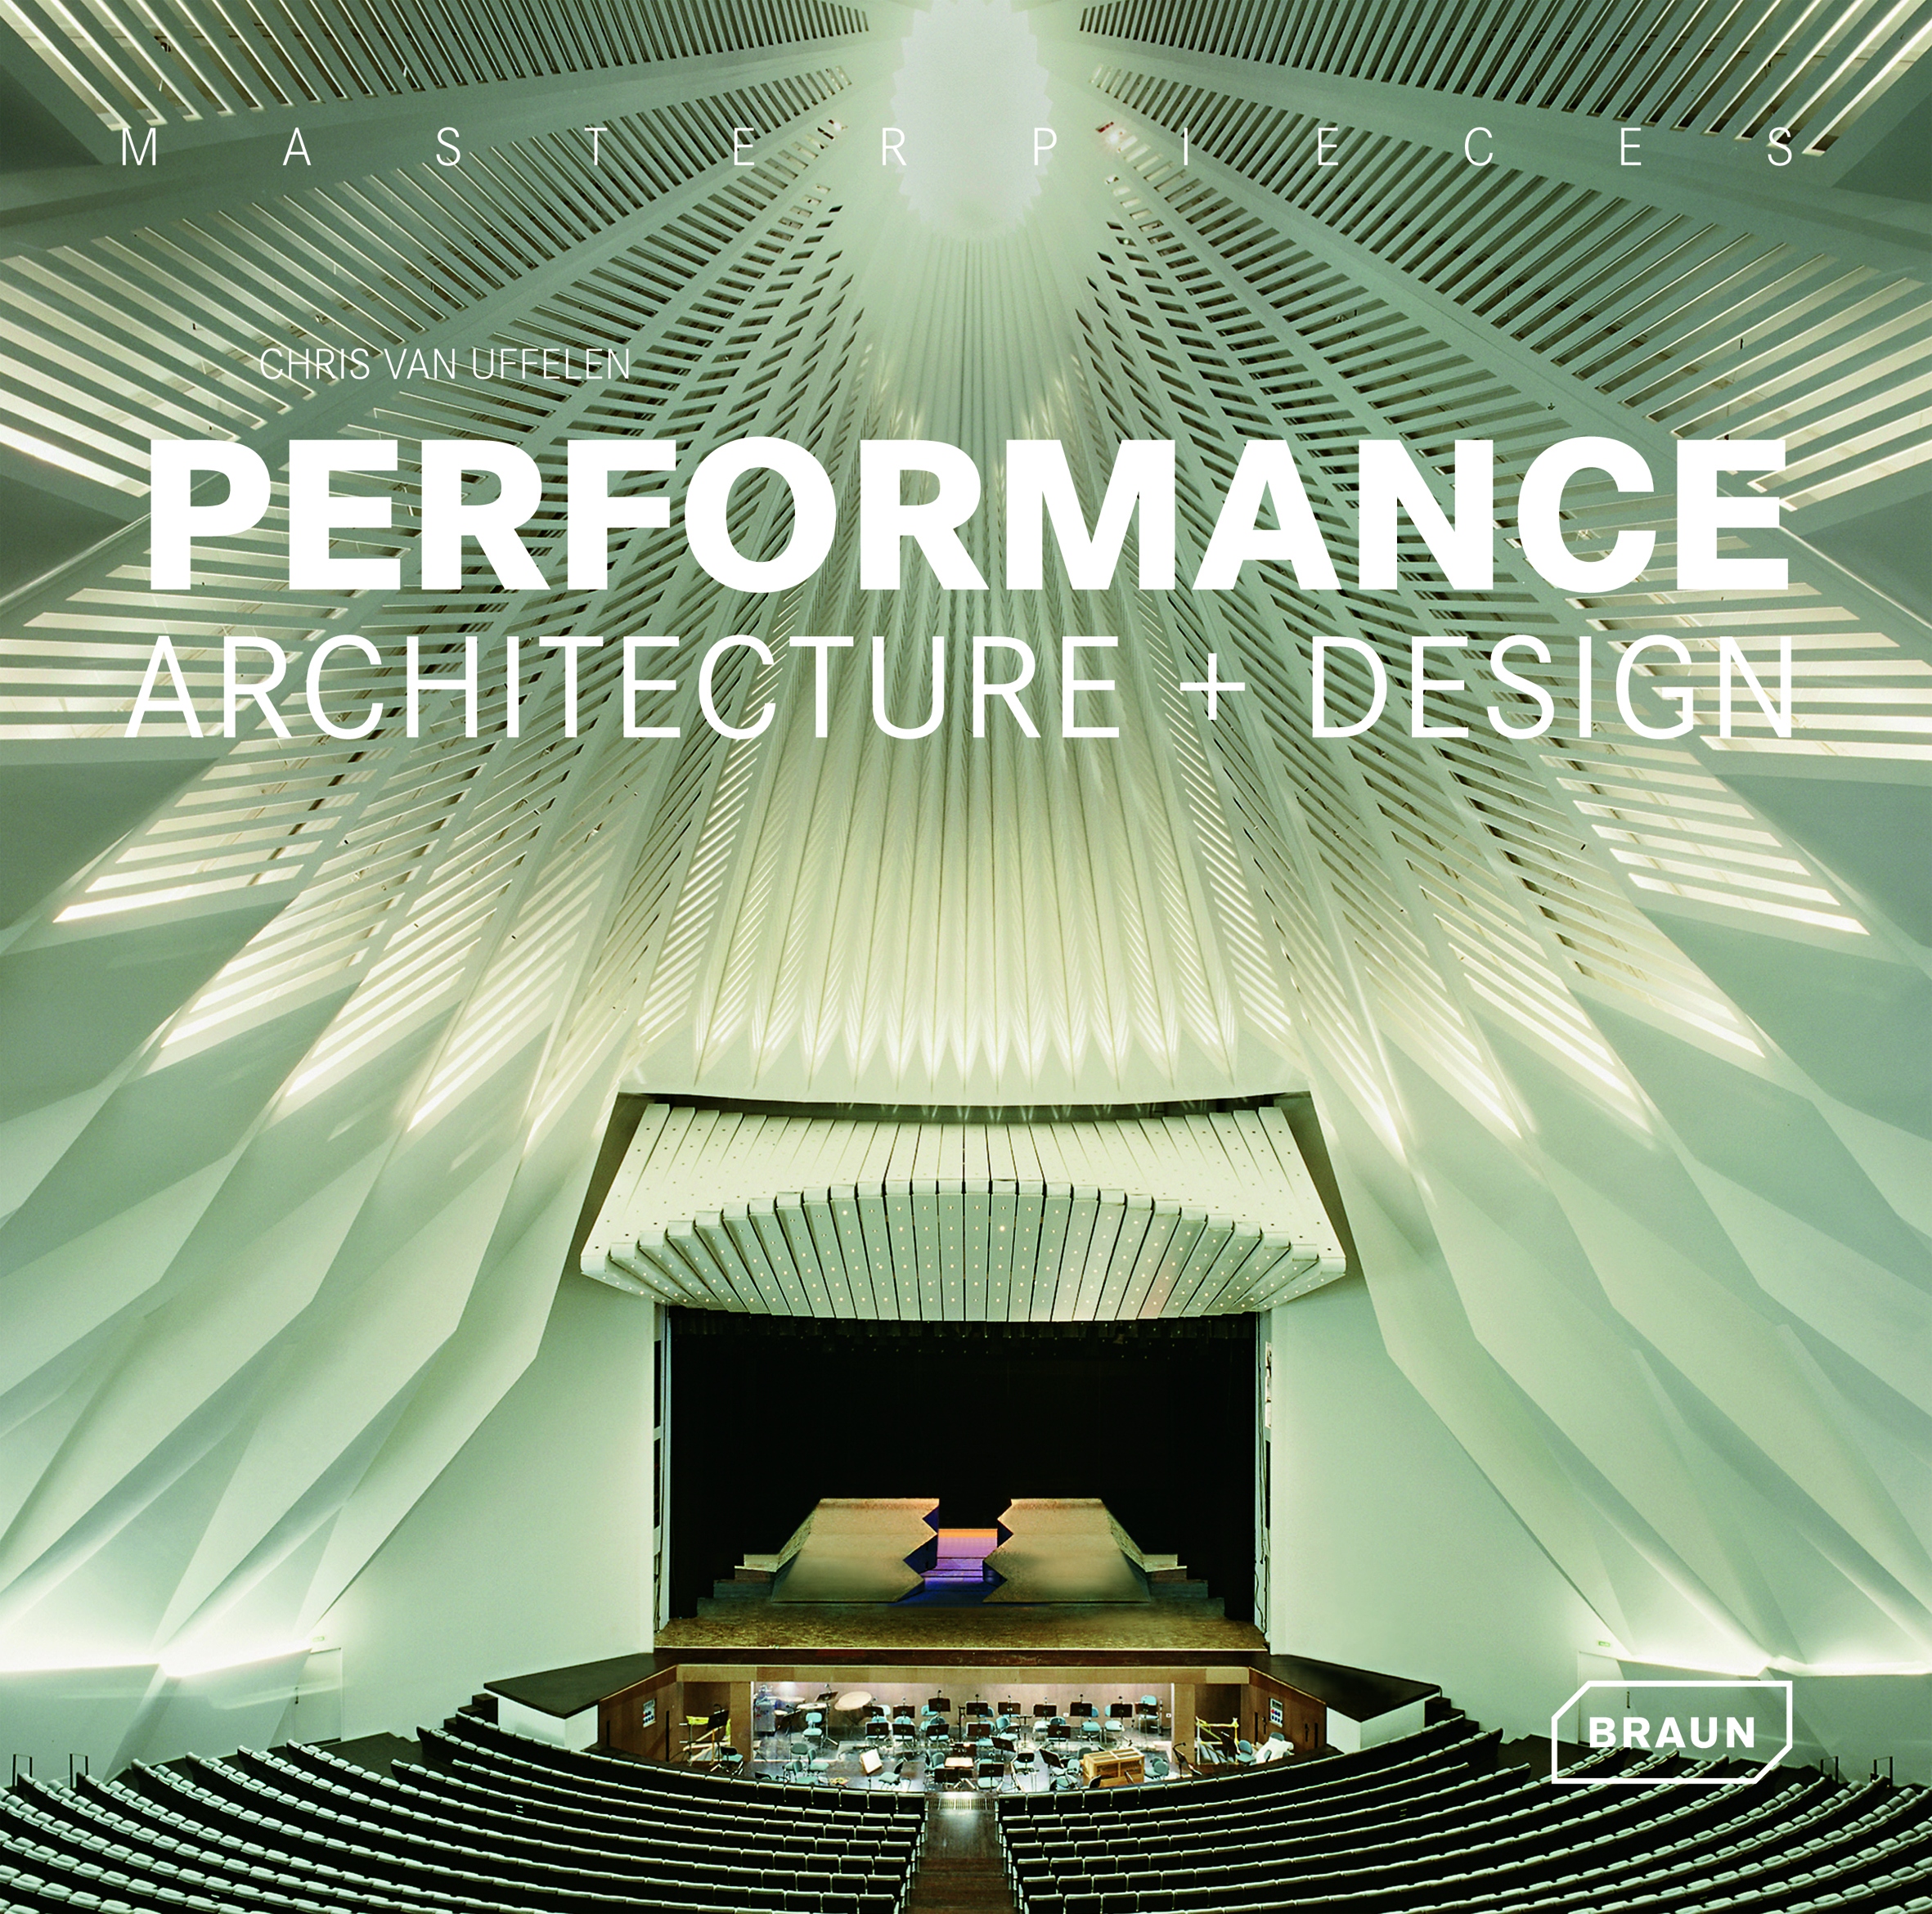 Book performance. Masterpiece Performance Architecture+Design. Performance Architecture. Chris van Uffelen Convention Centers год издания 2012, купить. Chris van Uffelen Apartment buildings.